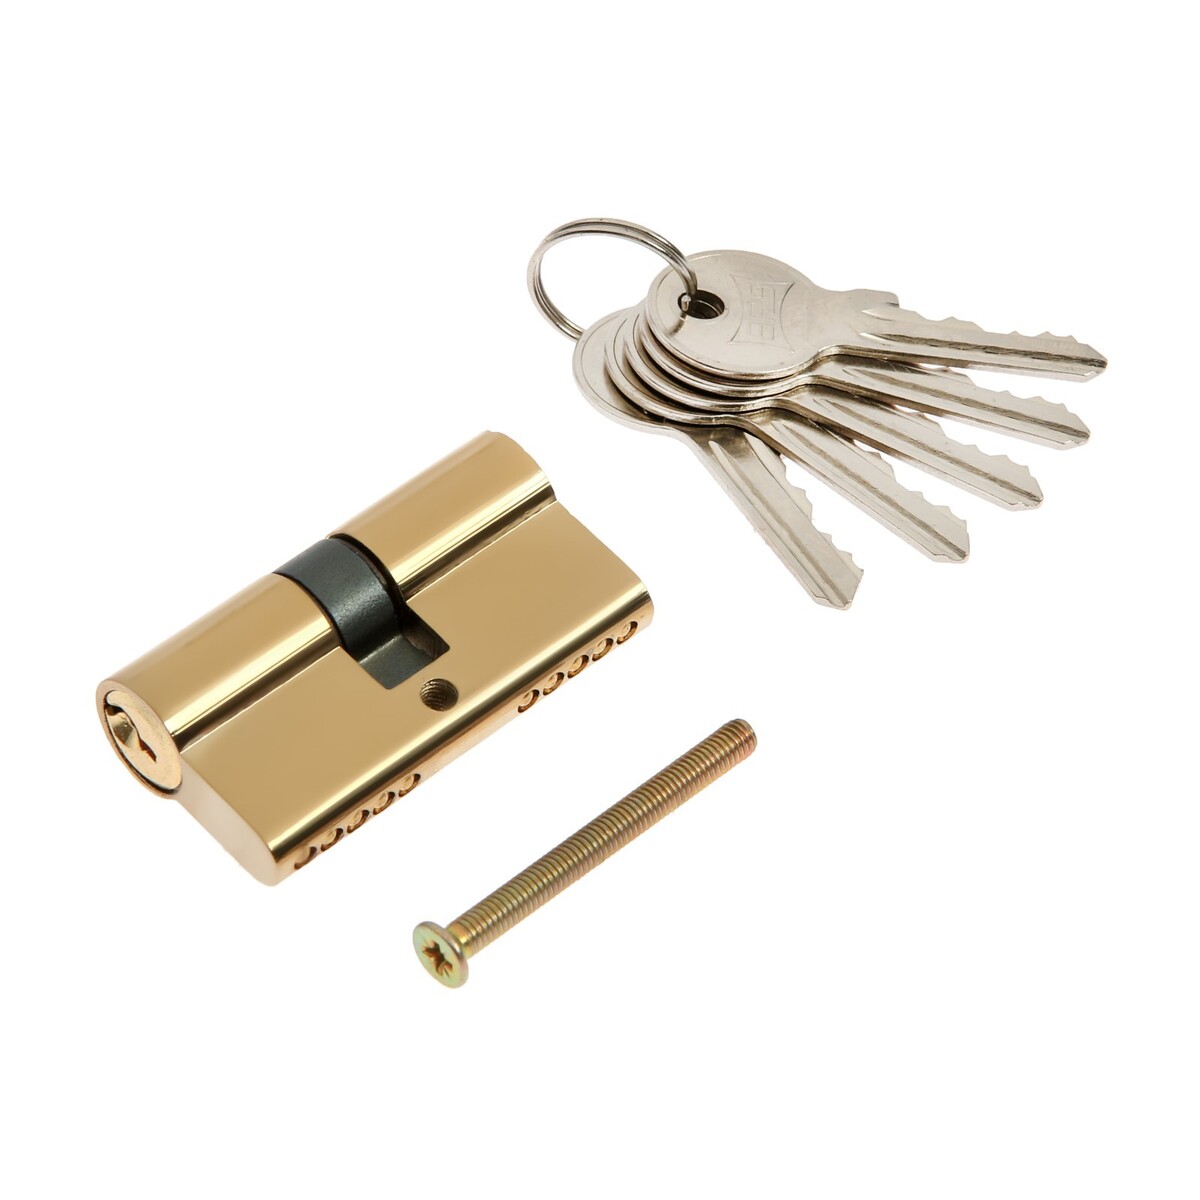 Цилиндровый механизм, 60 мм, английский ключ, 5 ключей, цвет золото цилиндровый механизм 60 мм с вертушкой английский ключ 5 ключей хром